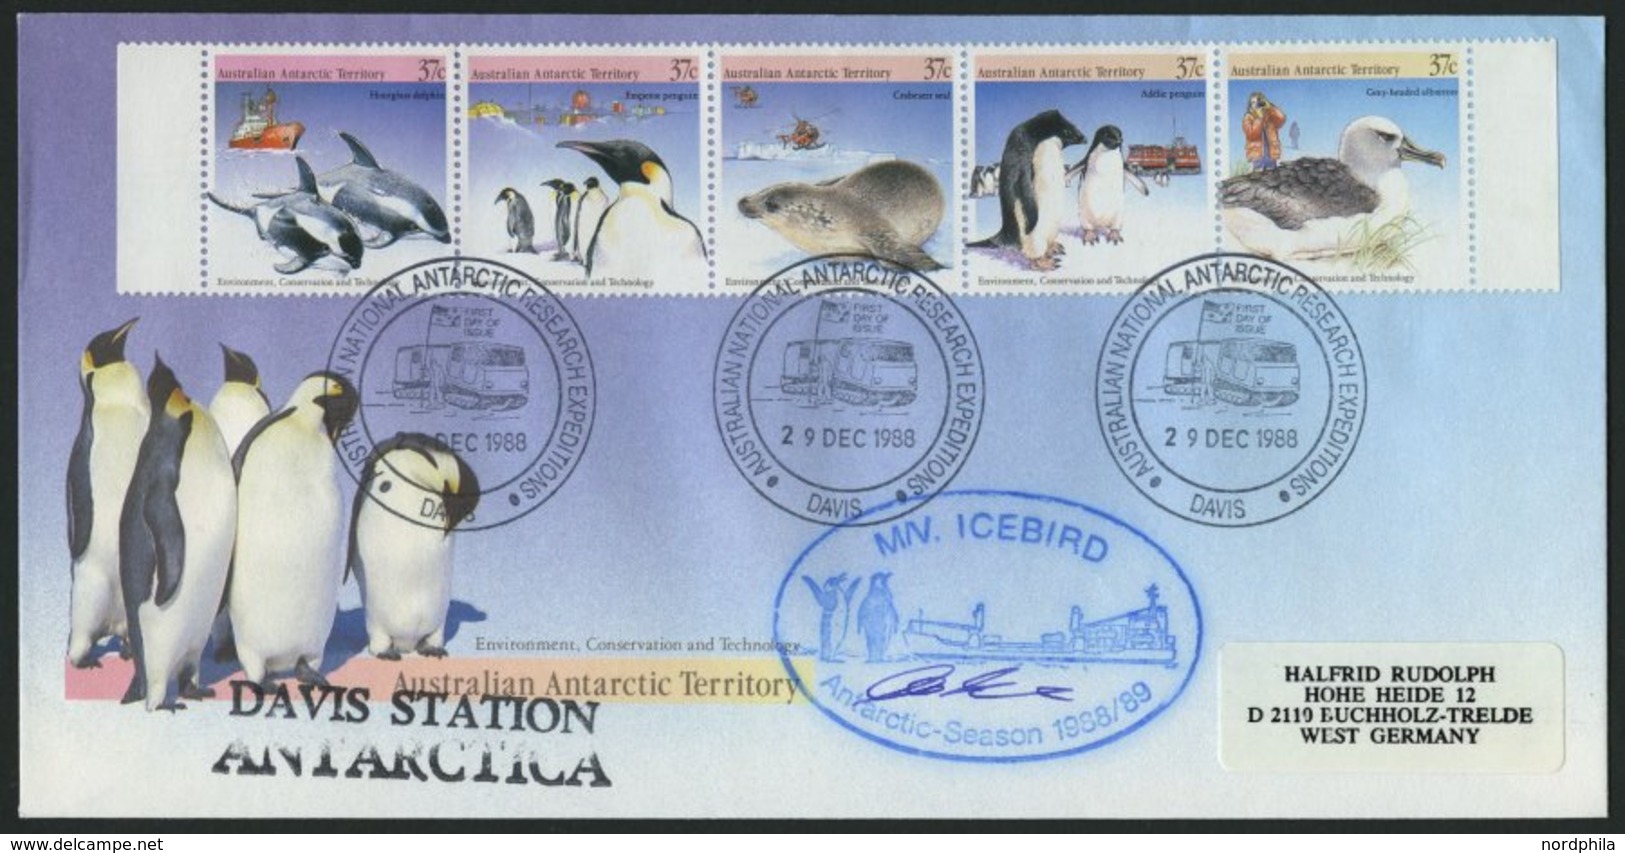 SONSTIGE MOTIVE 1980-93, Antarktis-Expeditionen, interessante Sammlung mit 83 verschiedenen Belegen, u.a. ICEBIRD und GO